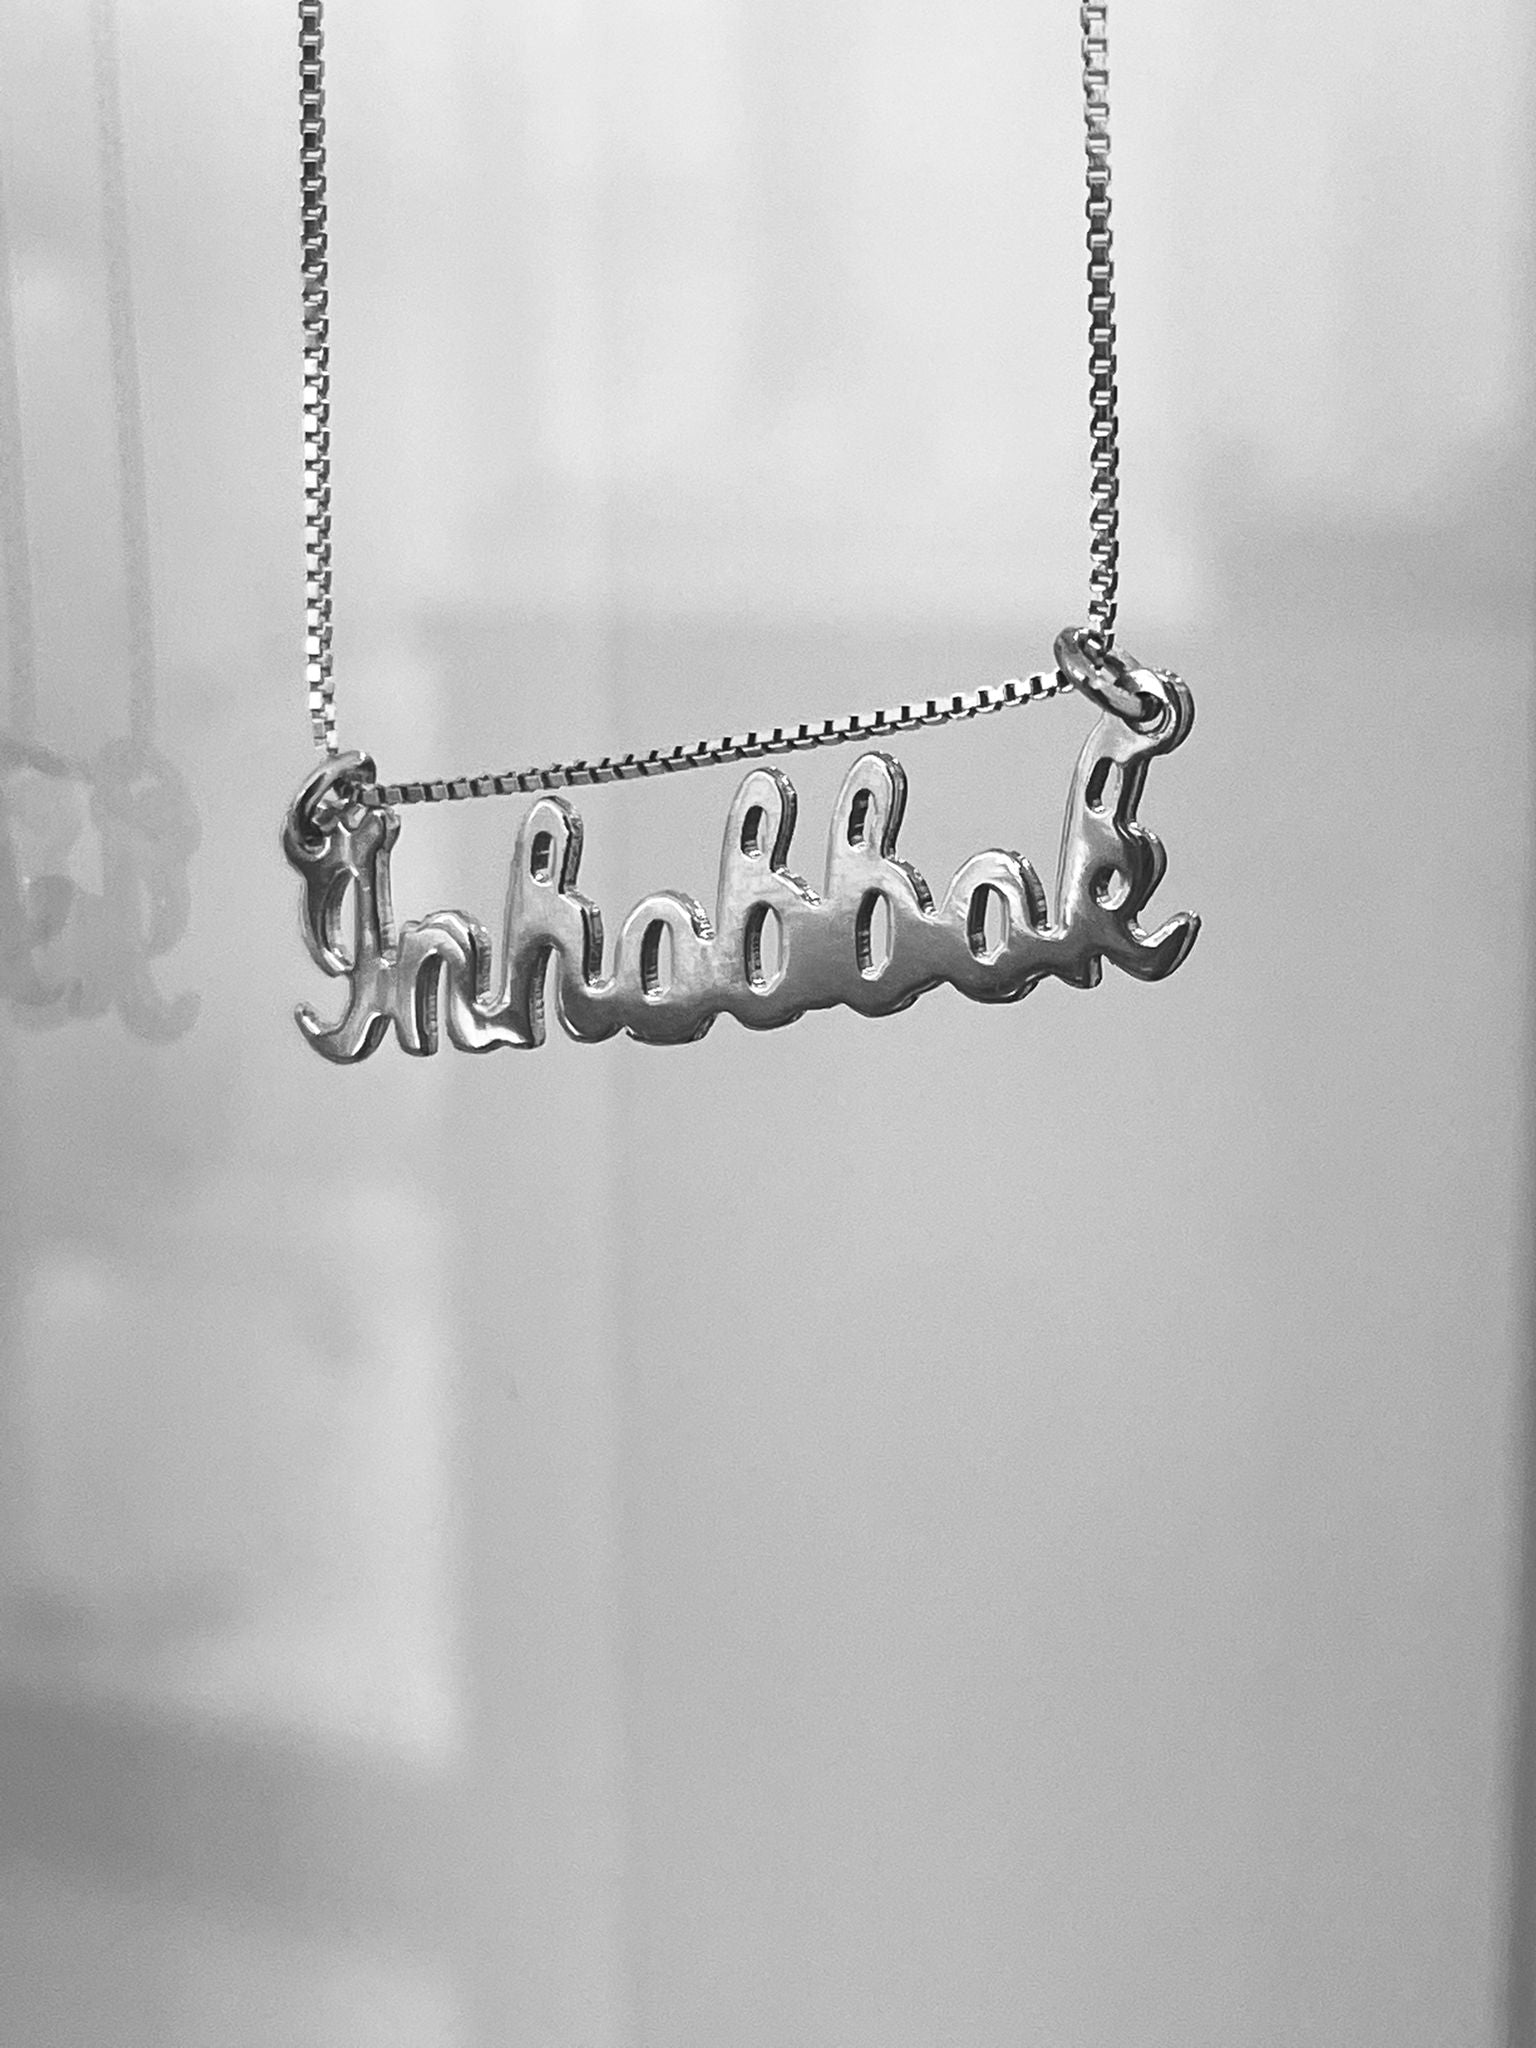 Inhobbok (handwritten) Necklace